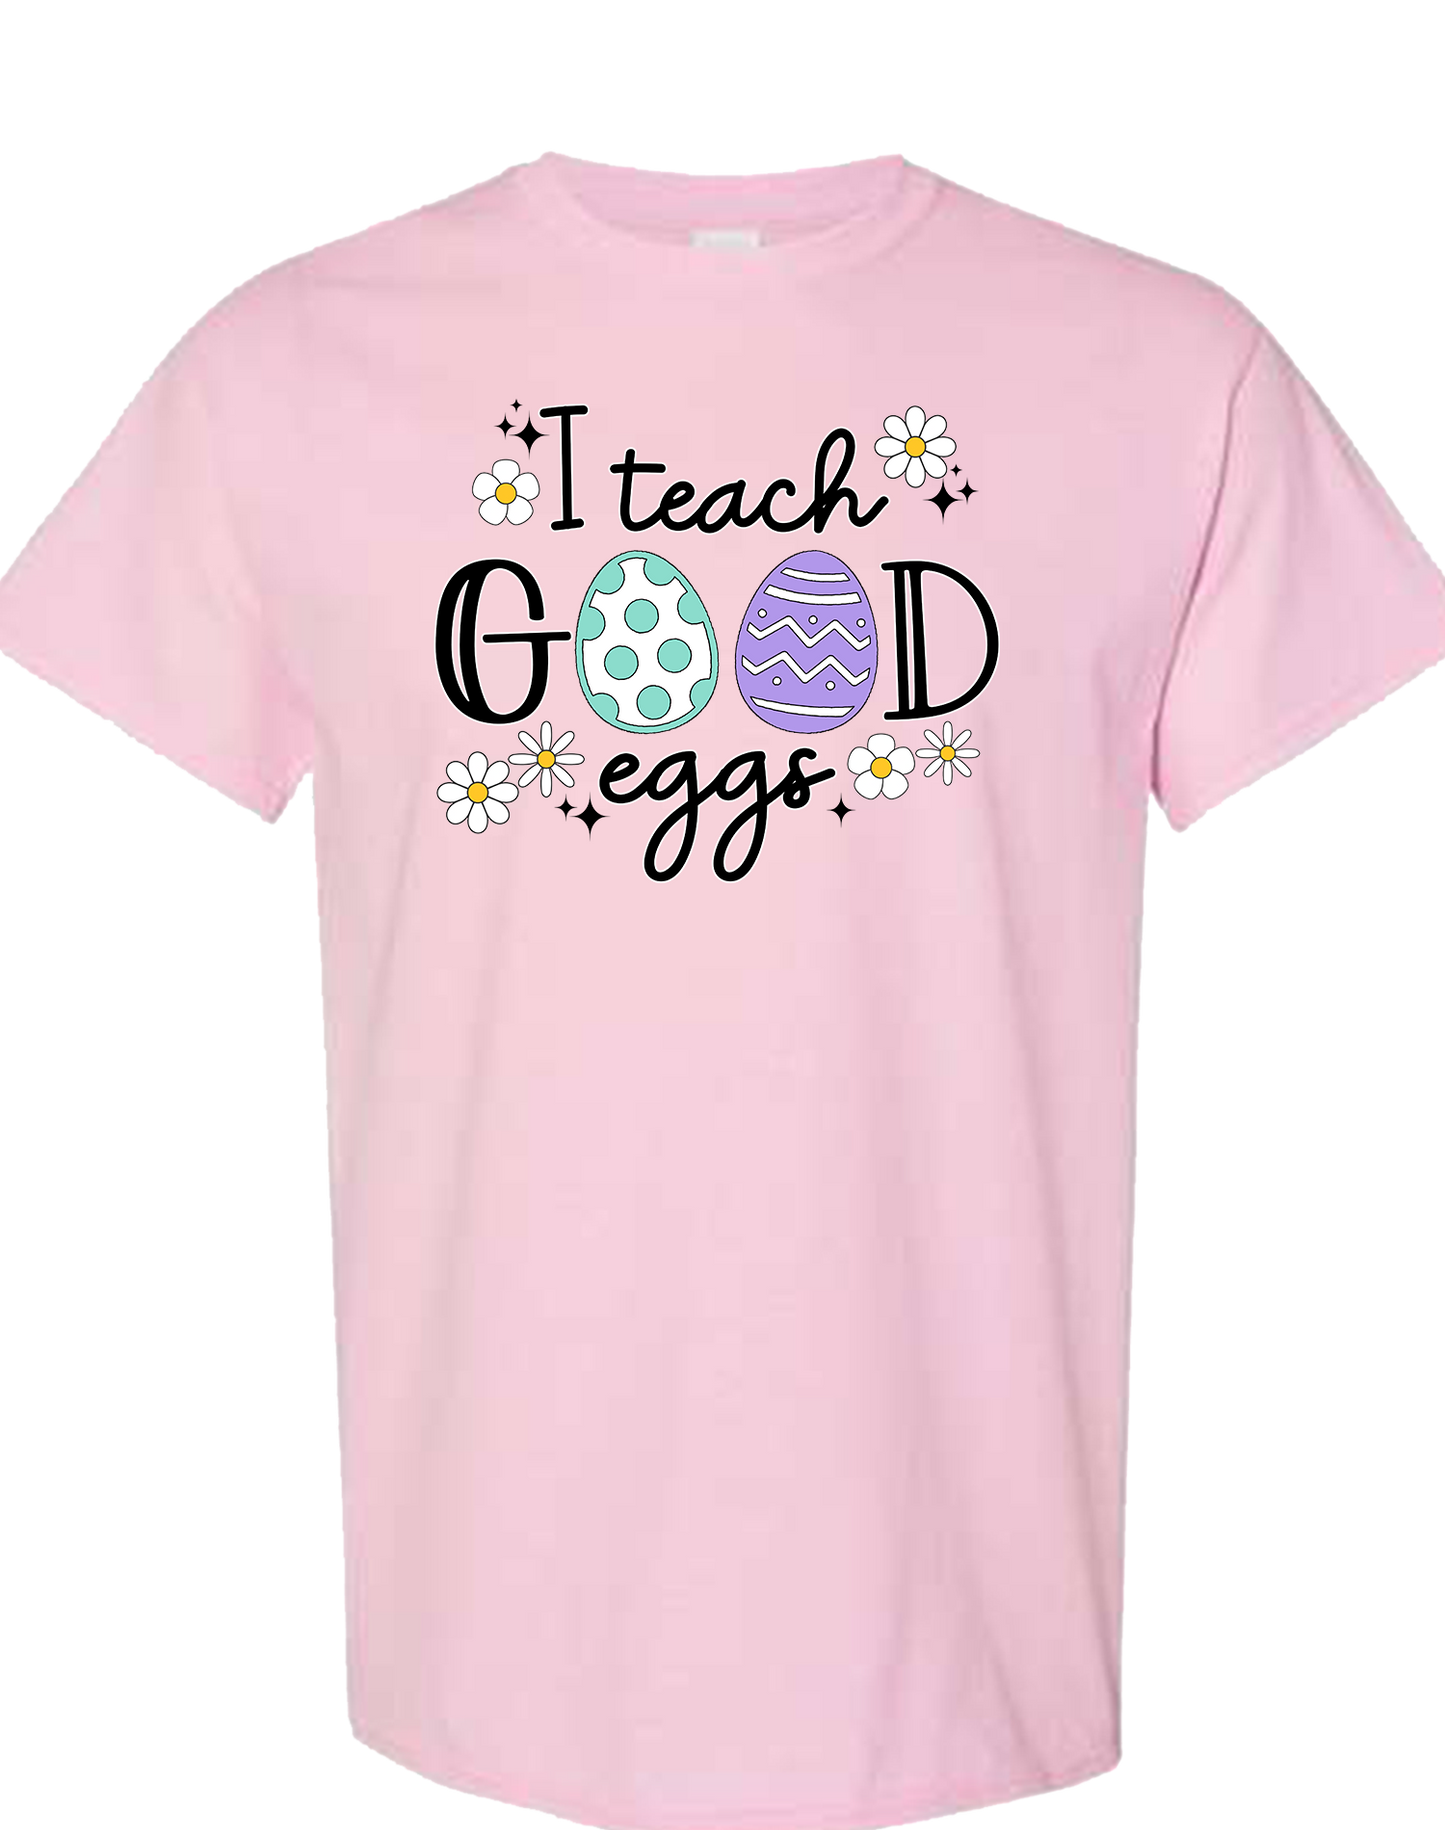 I Teach Good Eggs